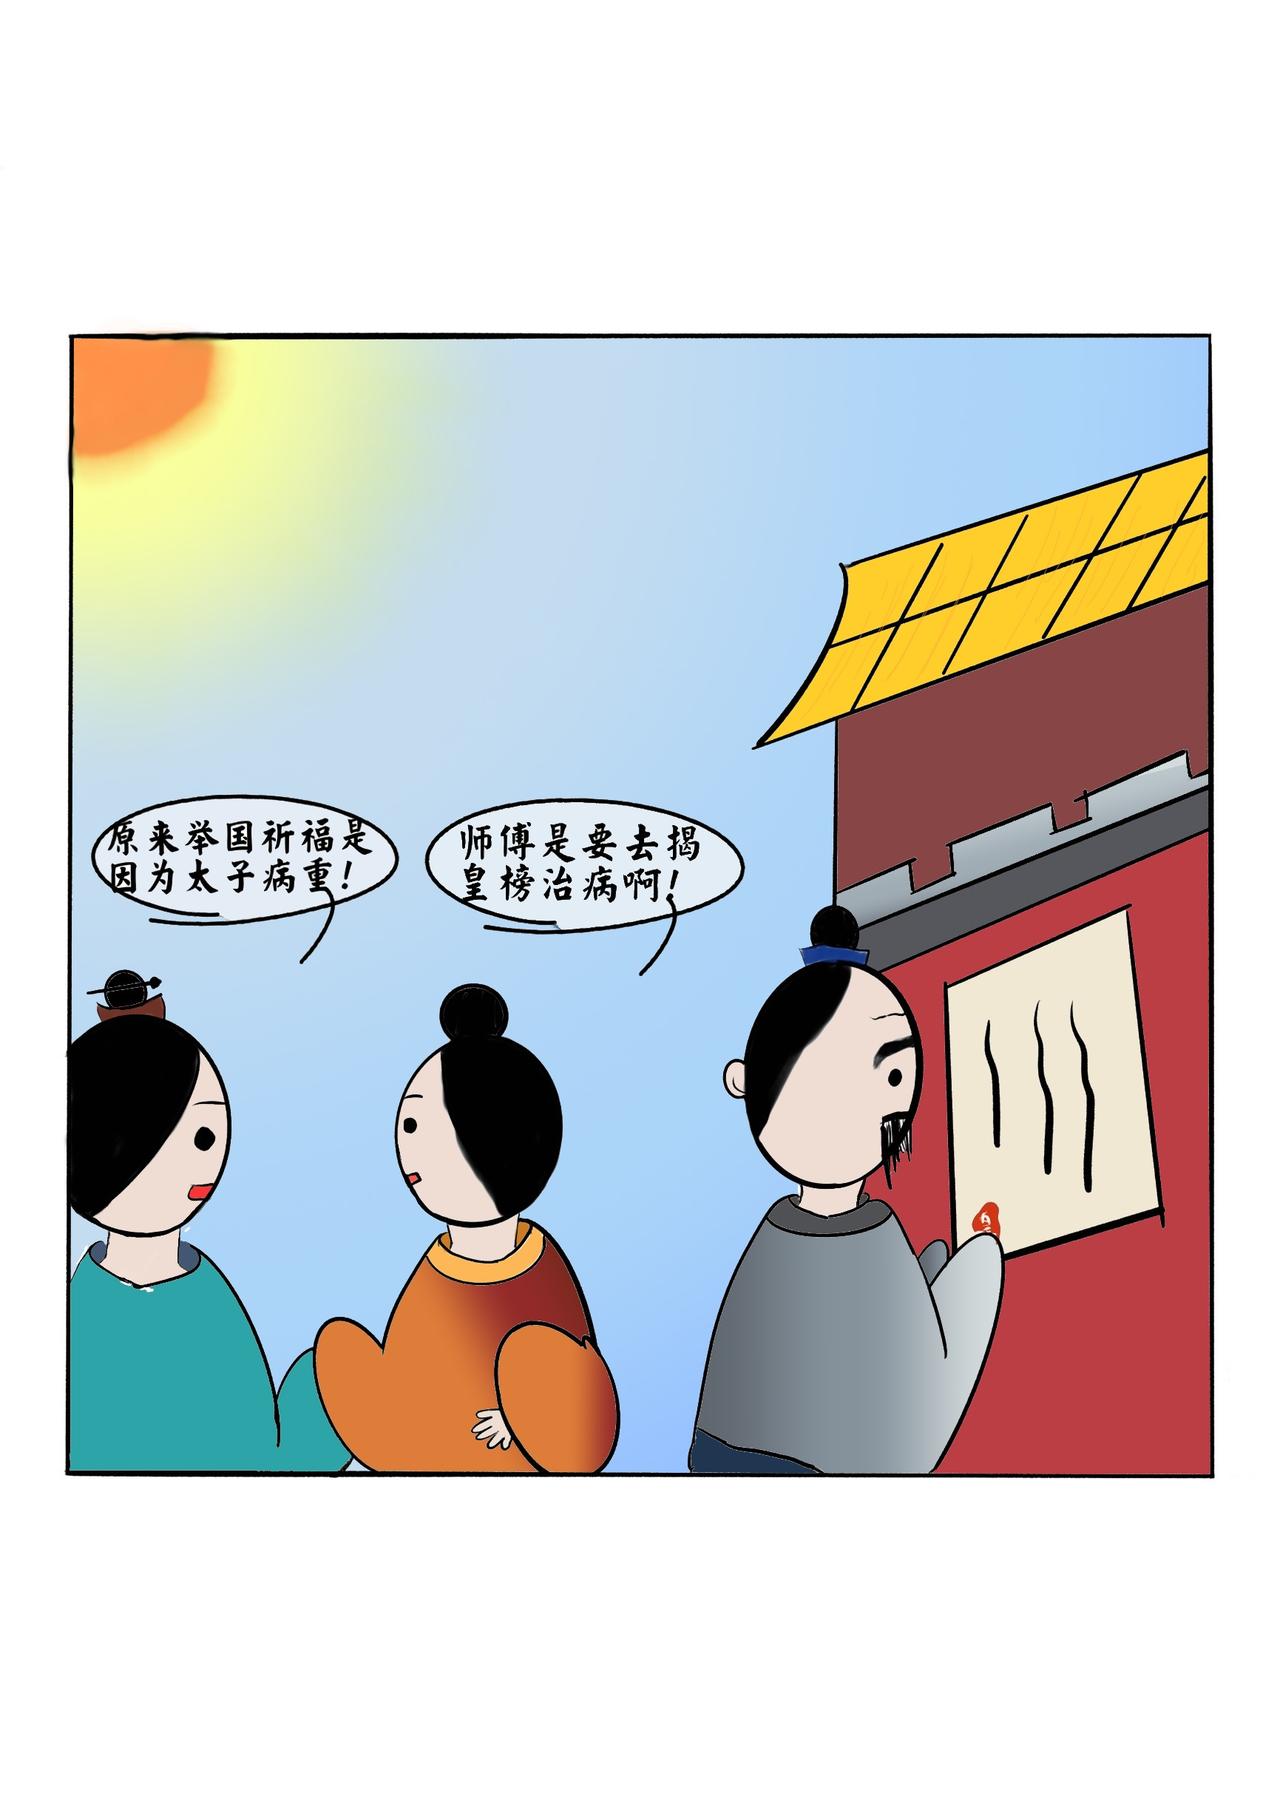 中醫入門之鍼灸趣味科普漫畫 - 扁鵲妙手起死回生 - 4